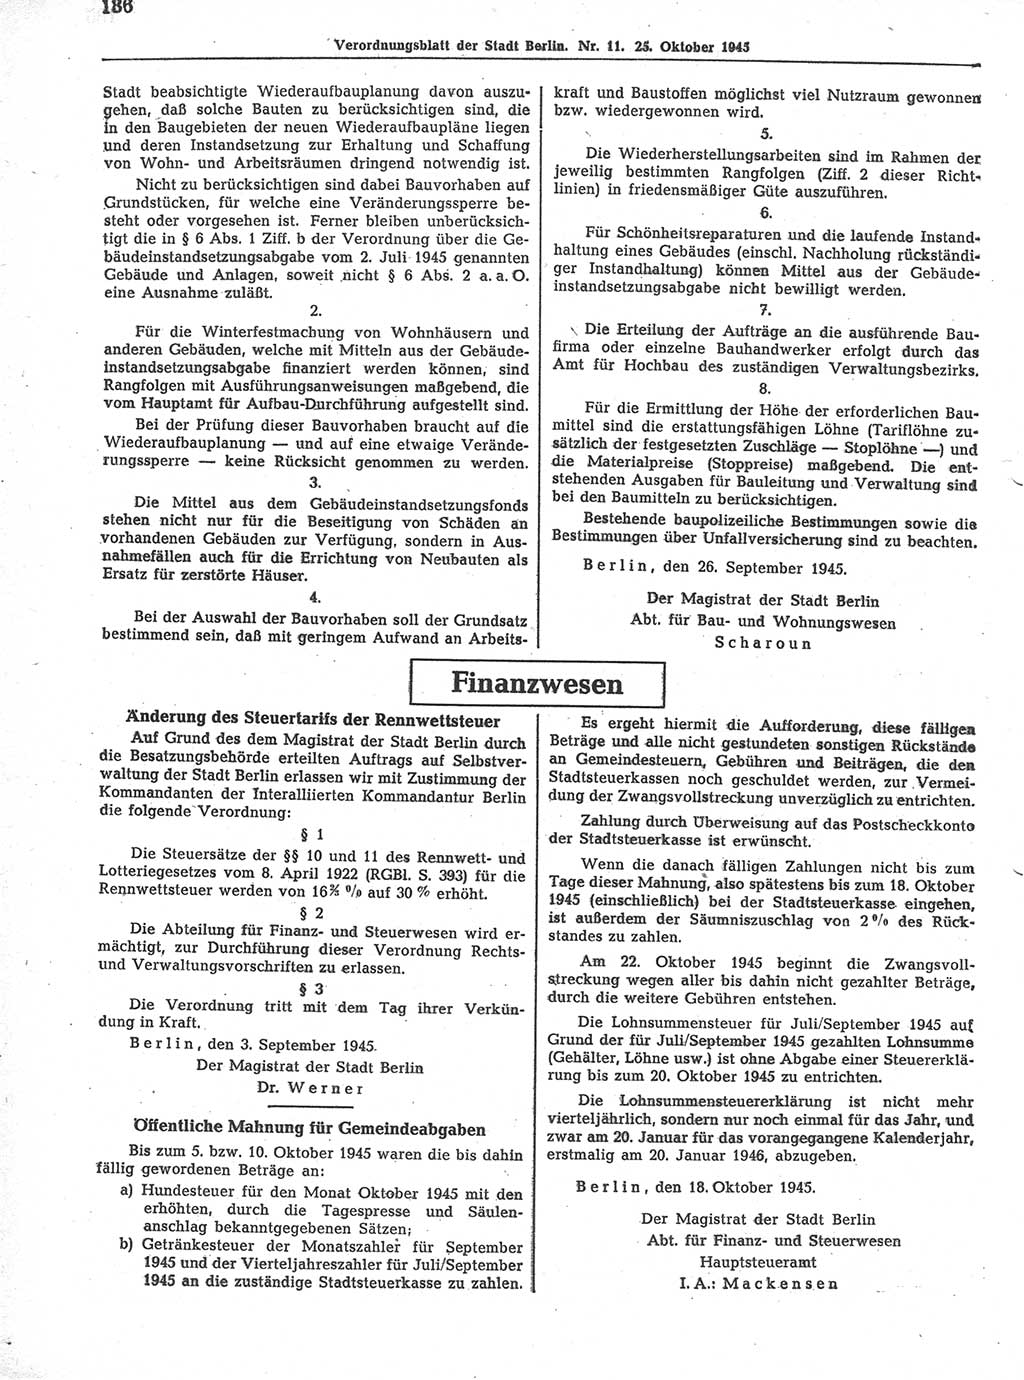 Verordnungsblatt (VOBl.) der Stadt Berlin 1945, Seite 136 (VOBl. Bln. 1945, S. 136)